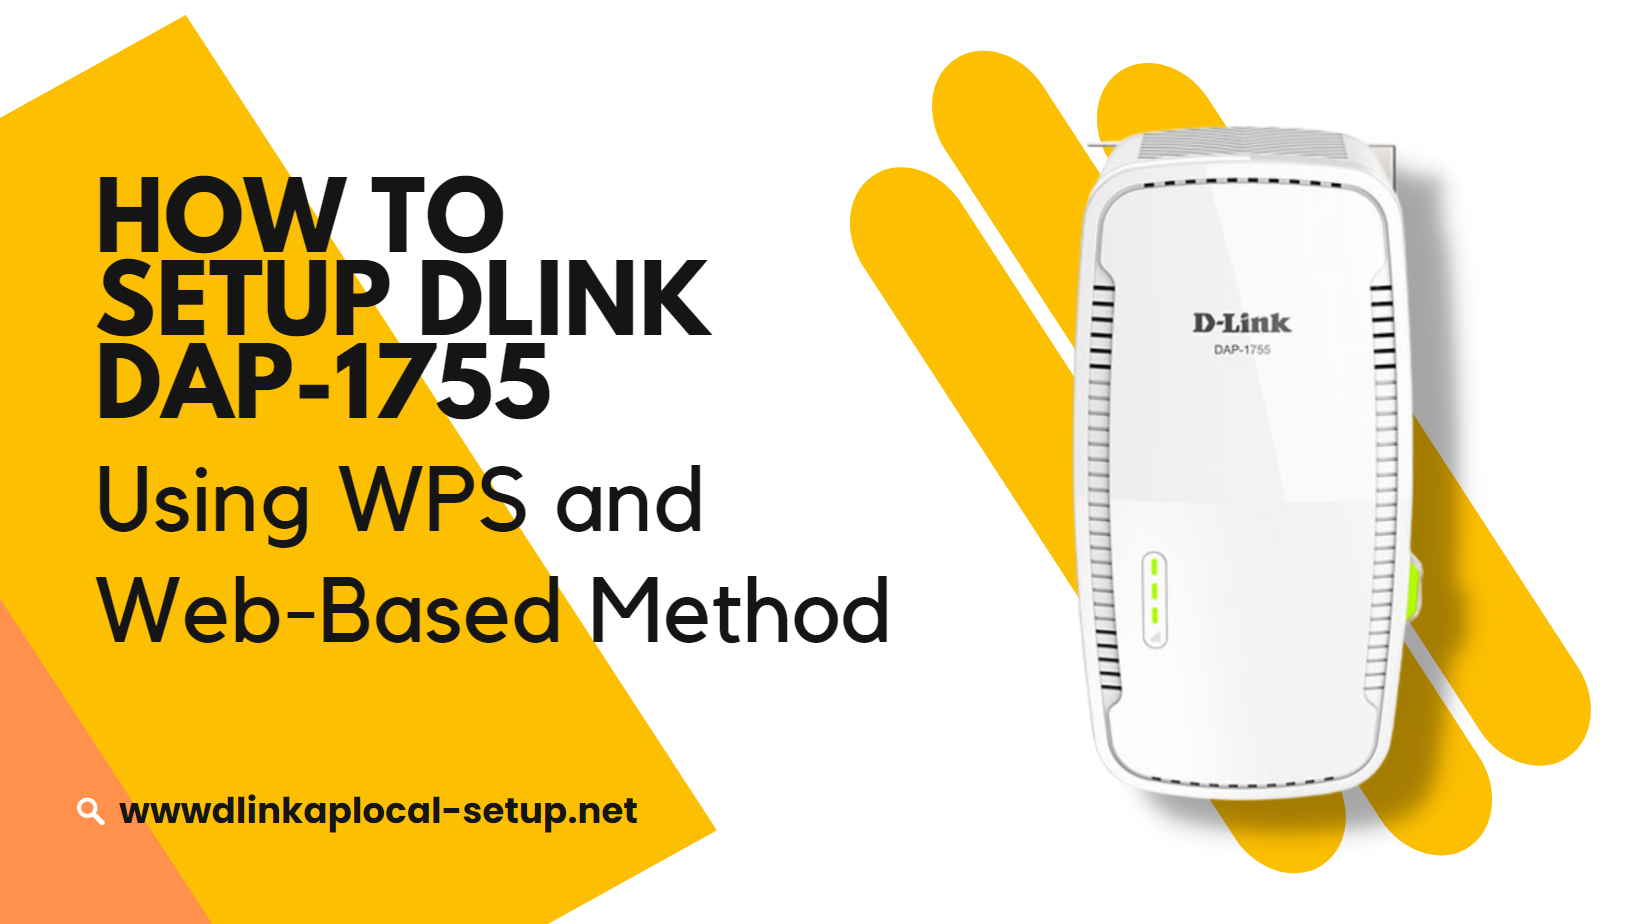 How to setup Dlink DAP-1755